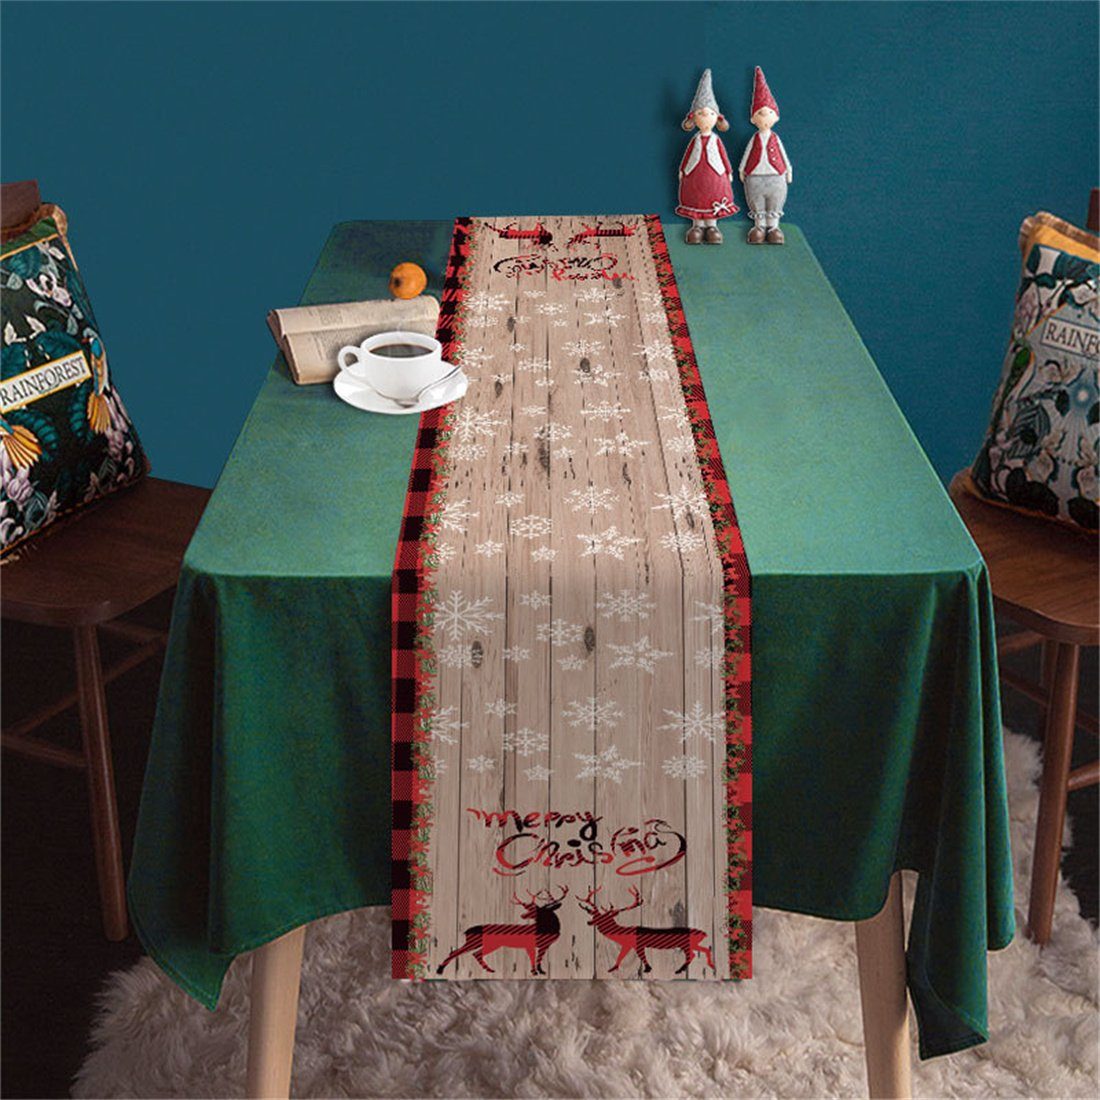 DÖRÖY Tischläufer Christmas Fawn Tischläufer Tischdekoration,Weihnachtsmann Print